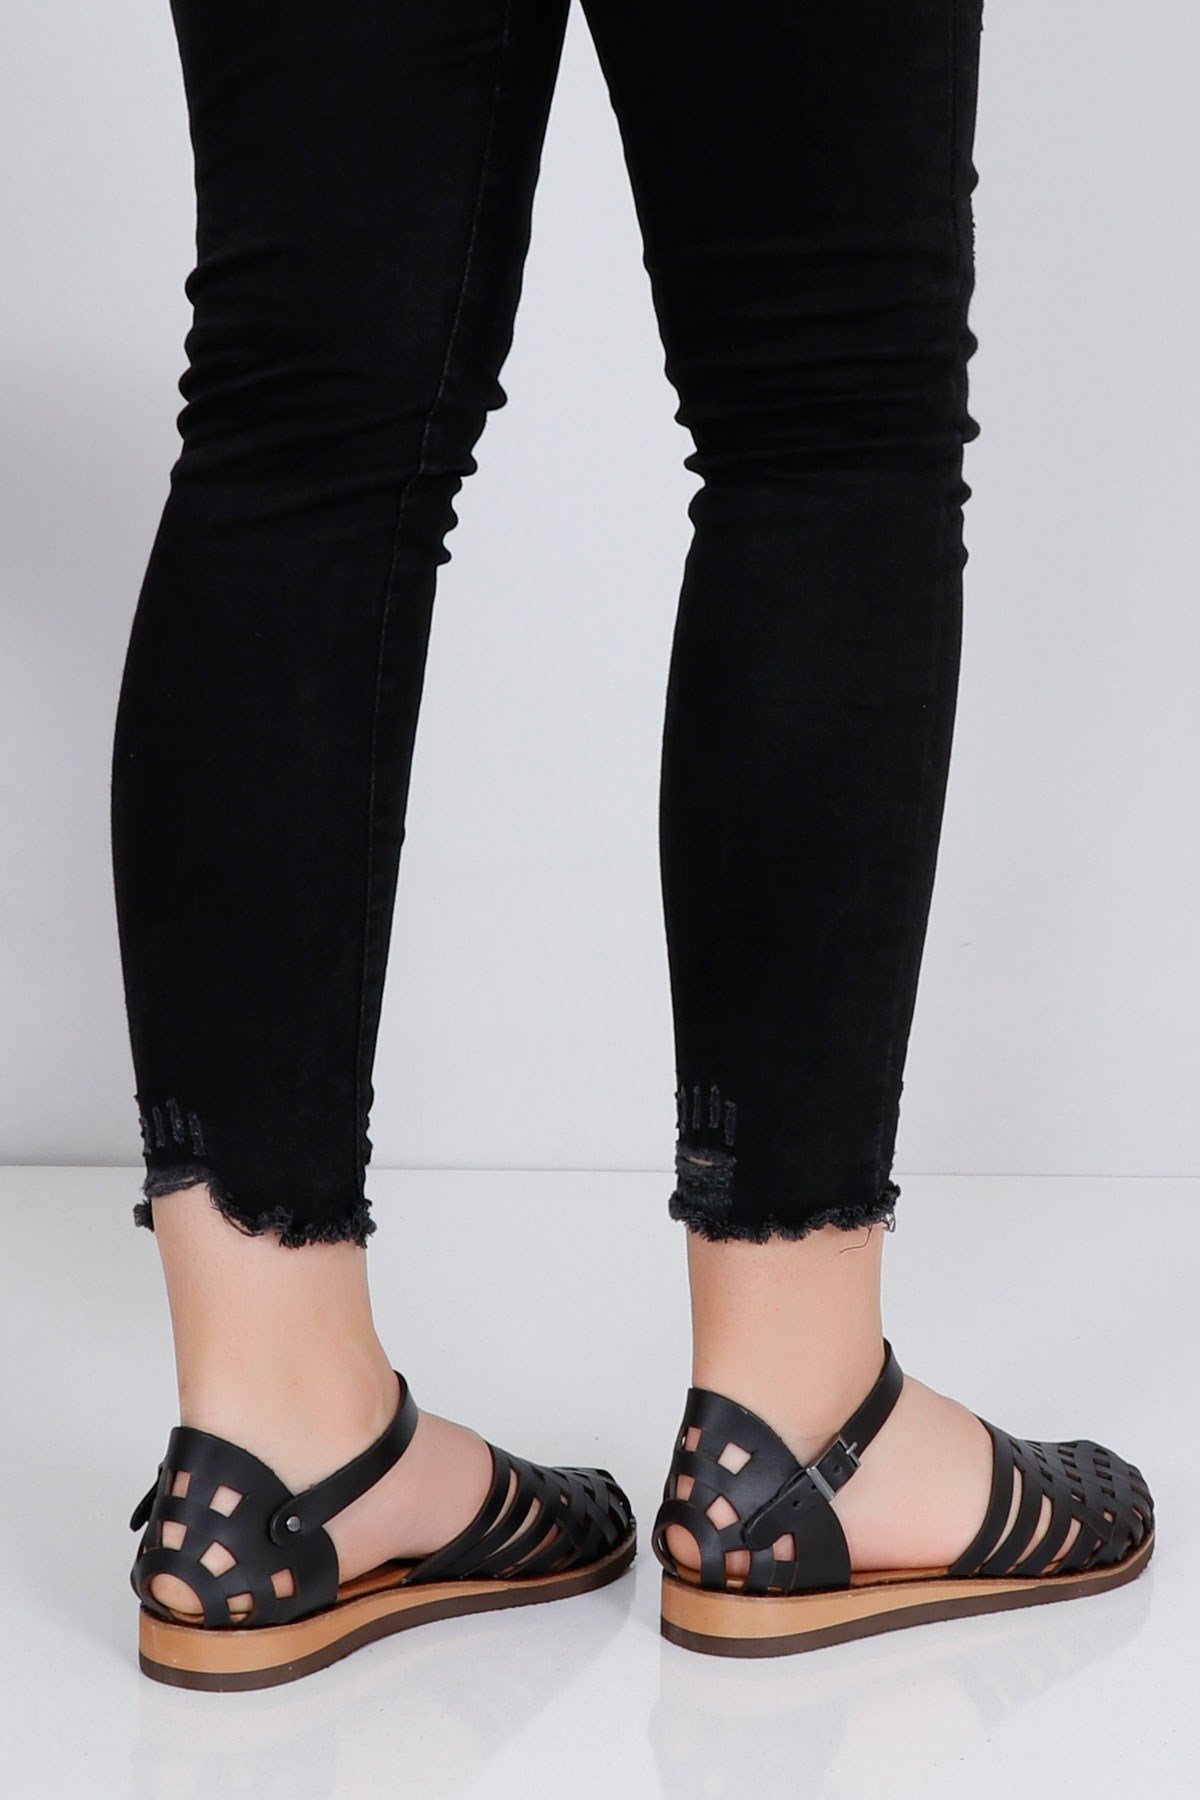 Siyah Hakiki Deri Düz Önü Kapalı Kadın Sandalet 035 Fiyatı ve Modelleri